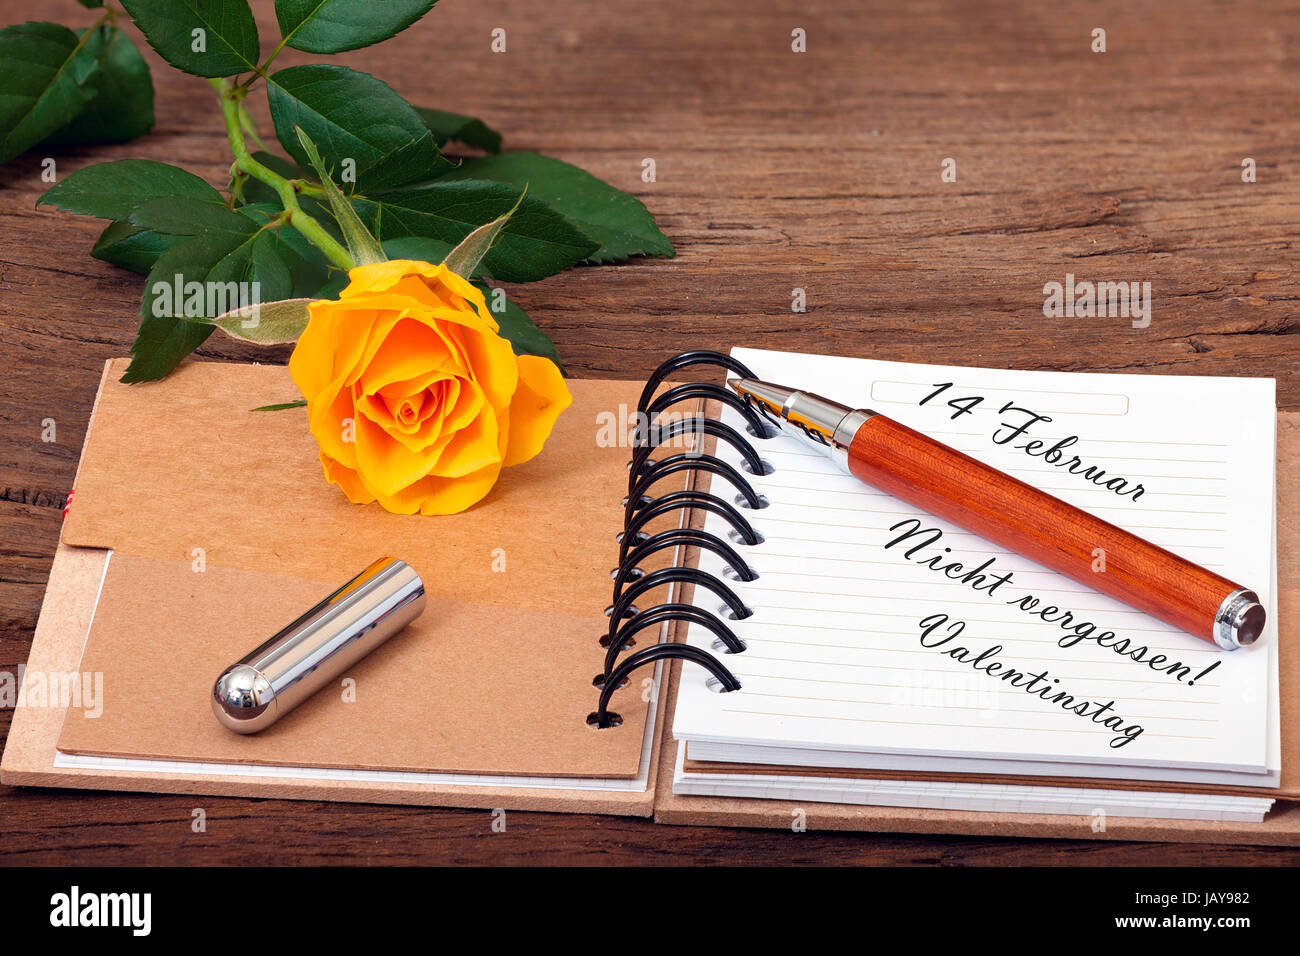 Notizbuch aufgeschlagen mit dem Text '14 Februar Nicht vergessen! Valentinstag' und ein Stift liegen auf hölzernen Untergrund Stock Photo